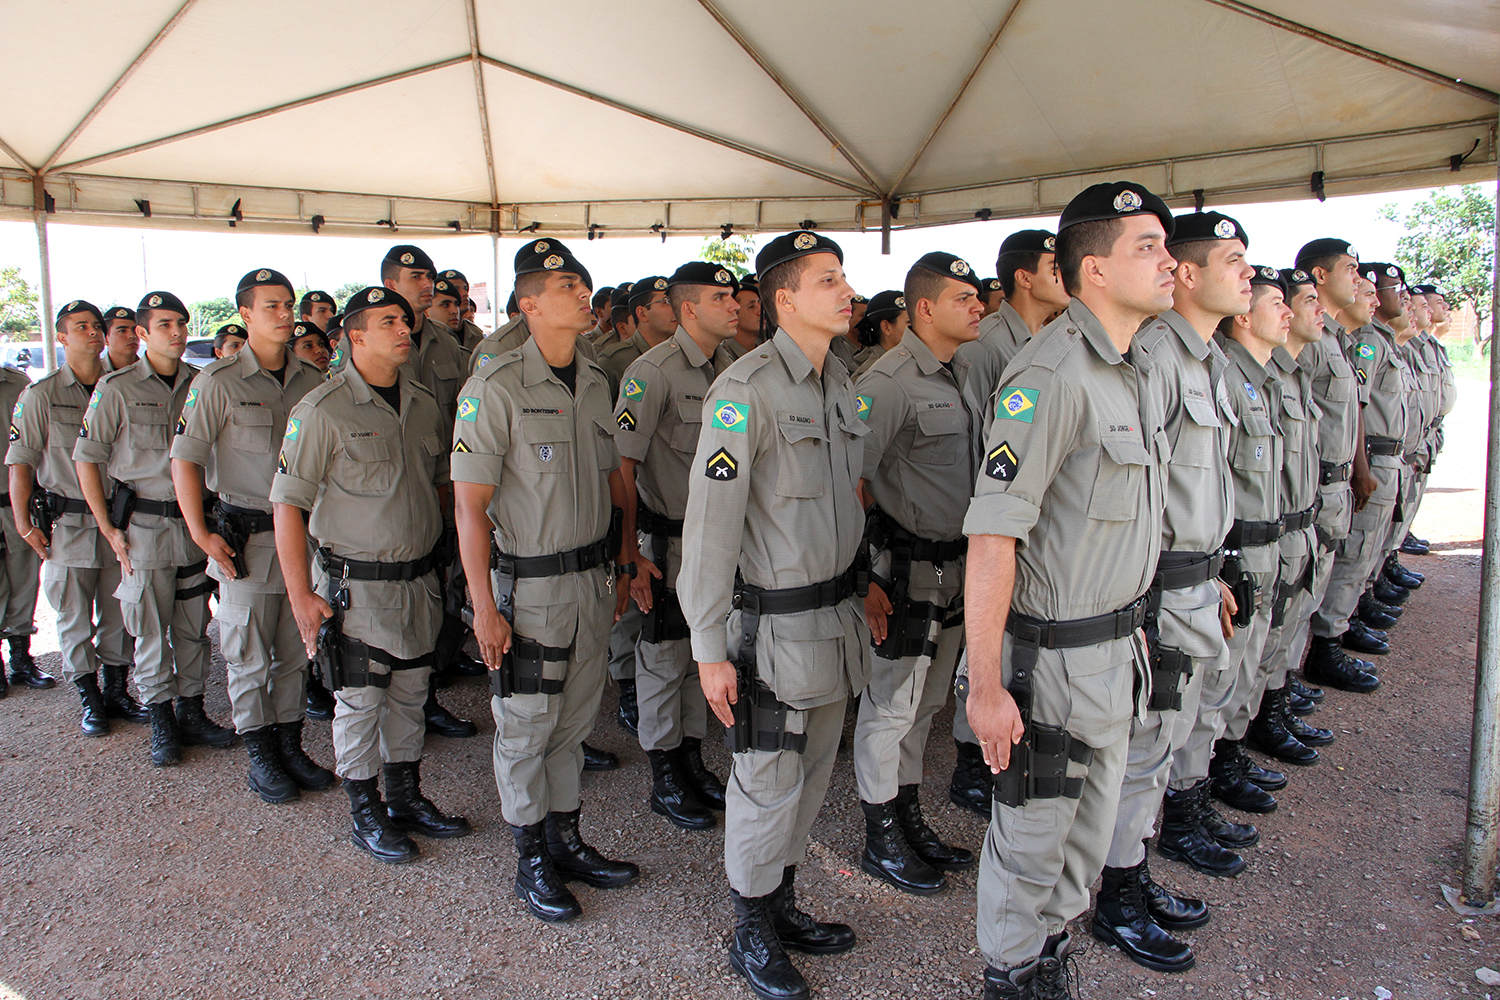 9 concursos públicos abertos no Brasil com mais de 1.000 vagas cada (Imagem: Reprodução/Polícia Militar de Goiás)